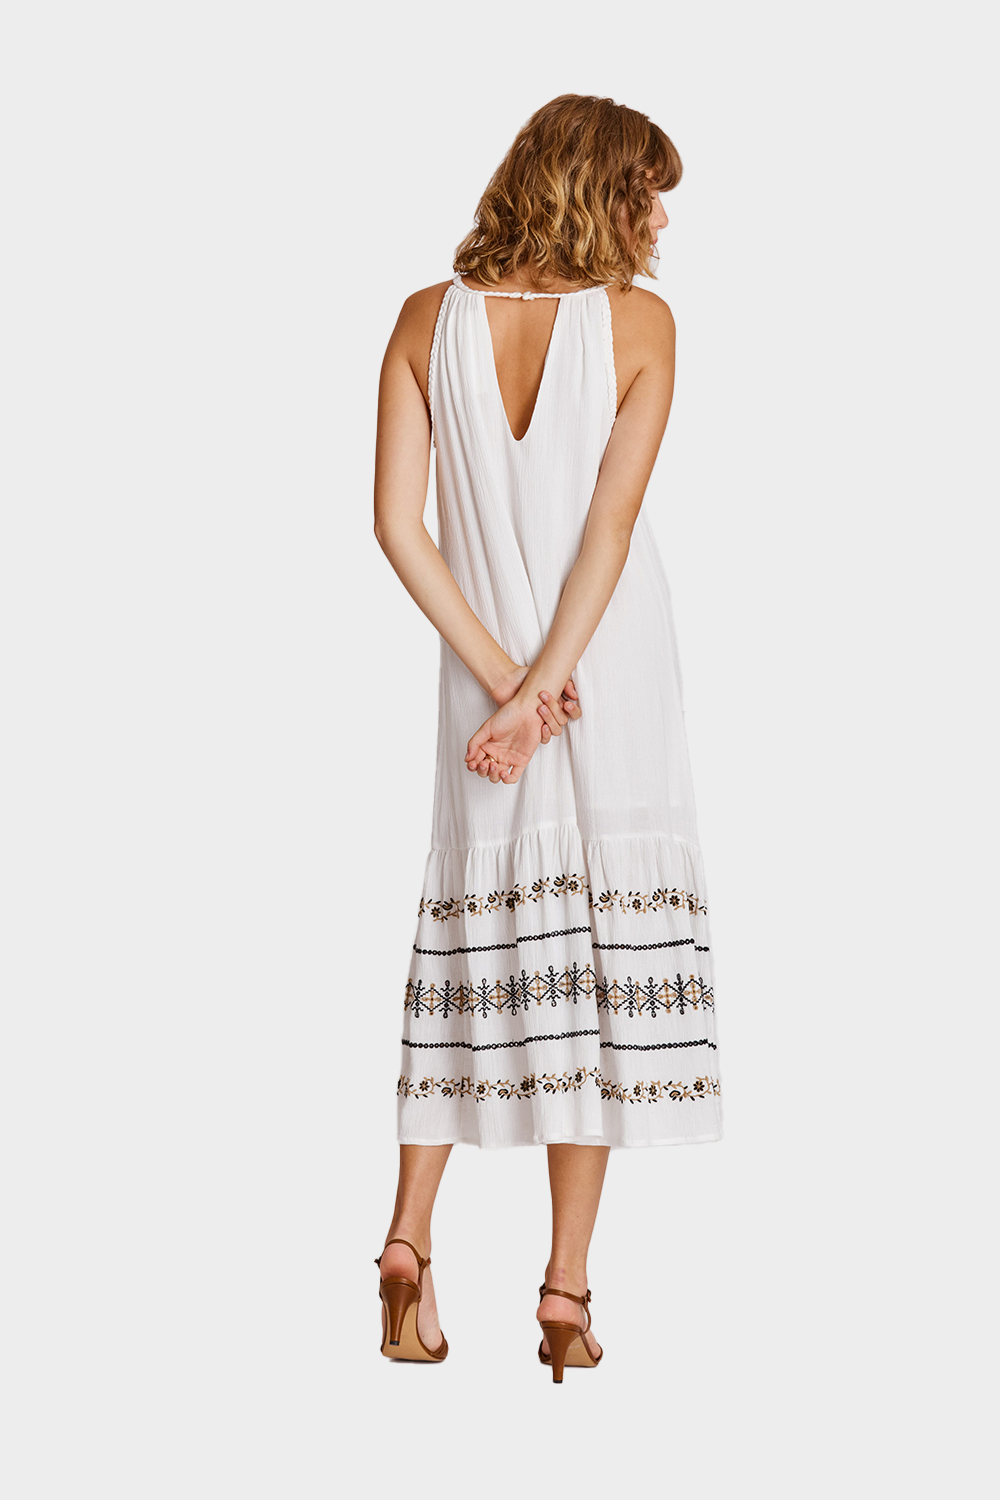 שמלת מידי לנשים רקמה אתנית RENE DERHY Vendome online | ונדום .